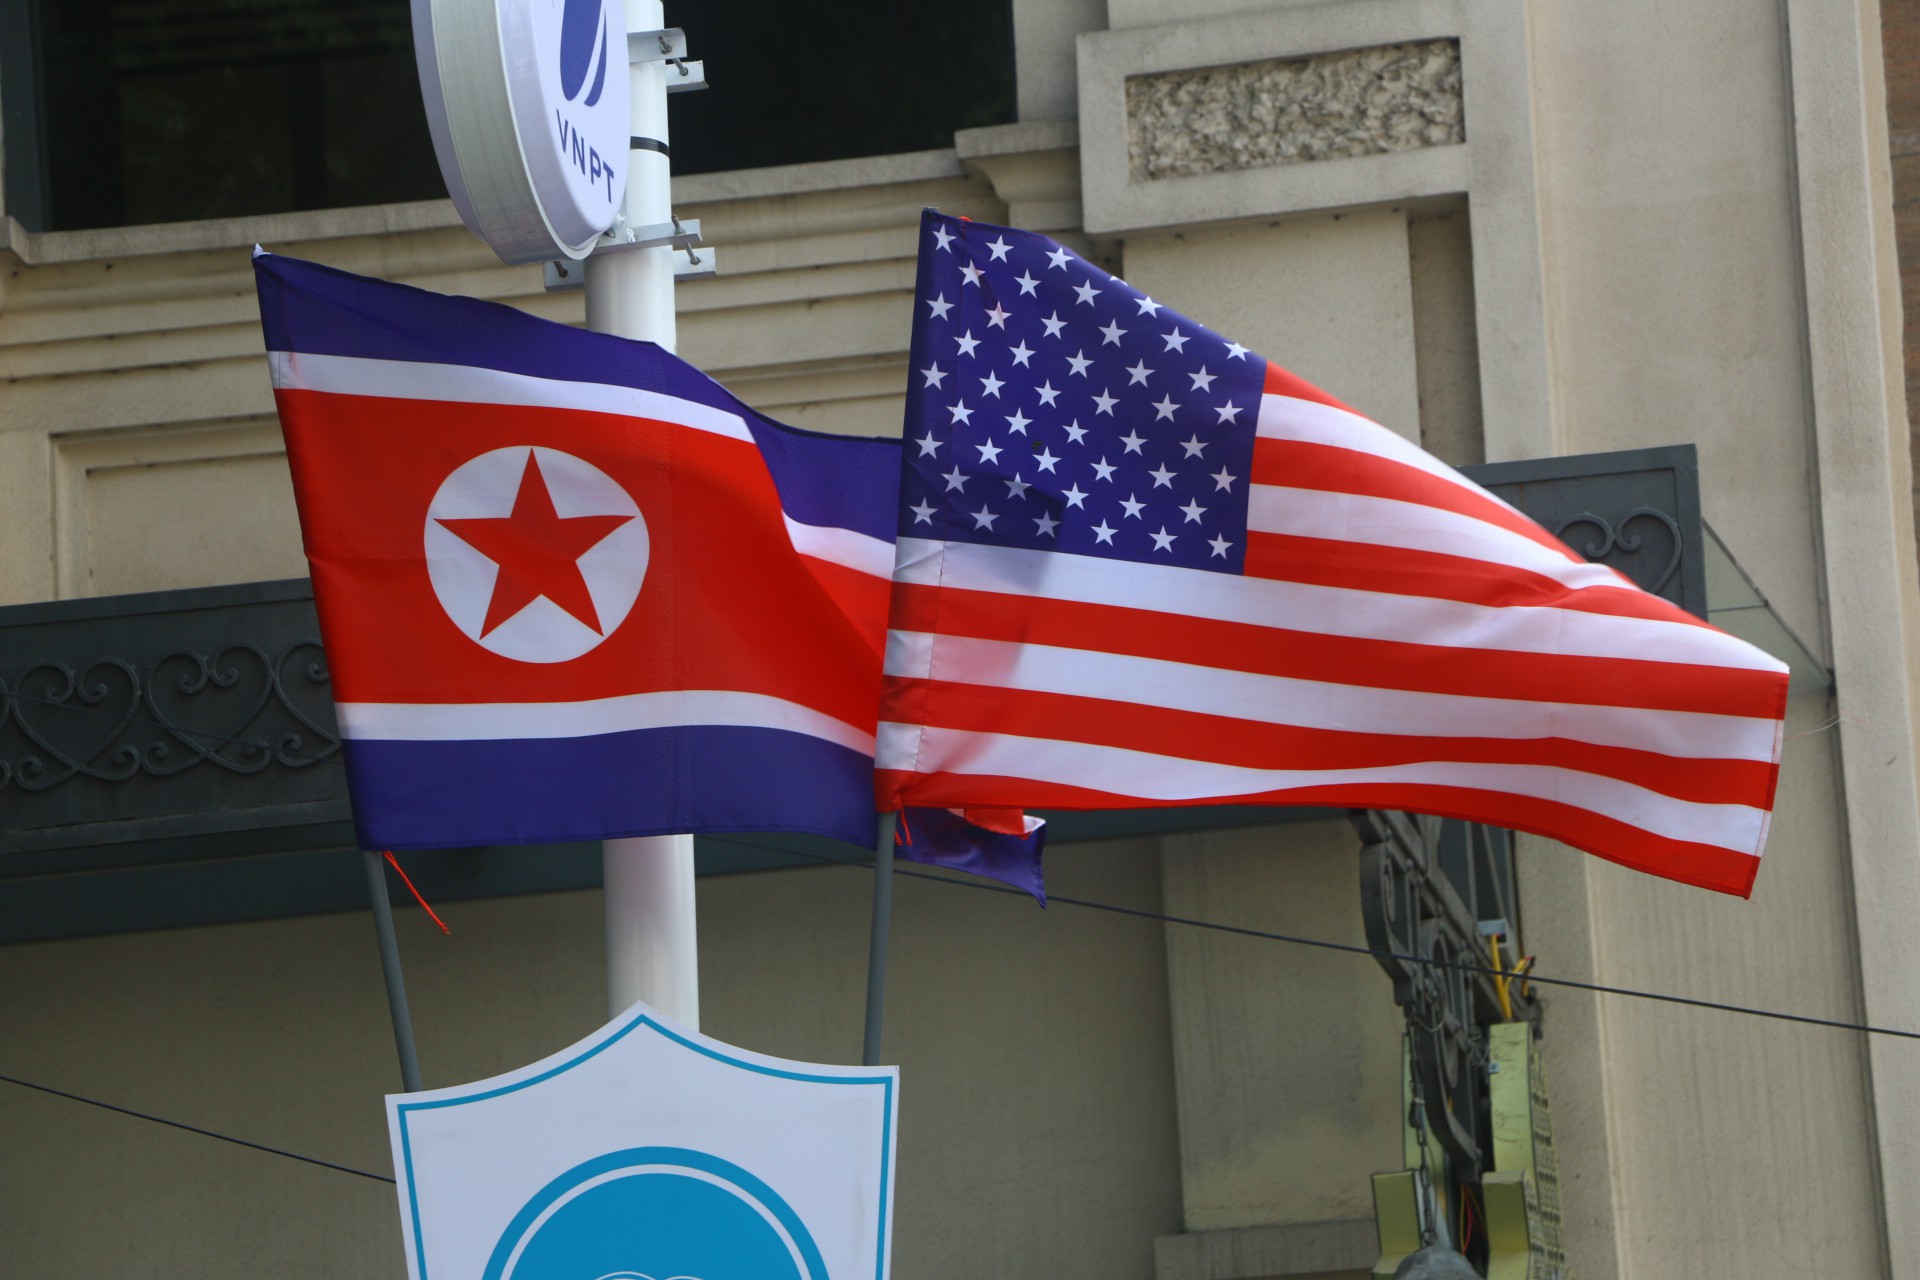 Cờ Mỹ - Triều Tiên tại Hà Nội: Như một biểu tượng của sự hòa bình và hợp tác, việc tổ chức cuộc gặp giữa Tổng thống Mỹ và lãnh đạo Triều Tiên tại Hà Nội đã làm xúc động cả nước Việt Nam. Hình ảnh hai quốc kỳ đan xen tưởng chừng như không thể nhưng lại xảy ra tại đất nước chúng ta sẽ là một kỷ niệm vô cùng đáng nhớ.